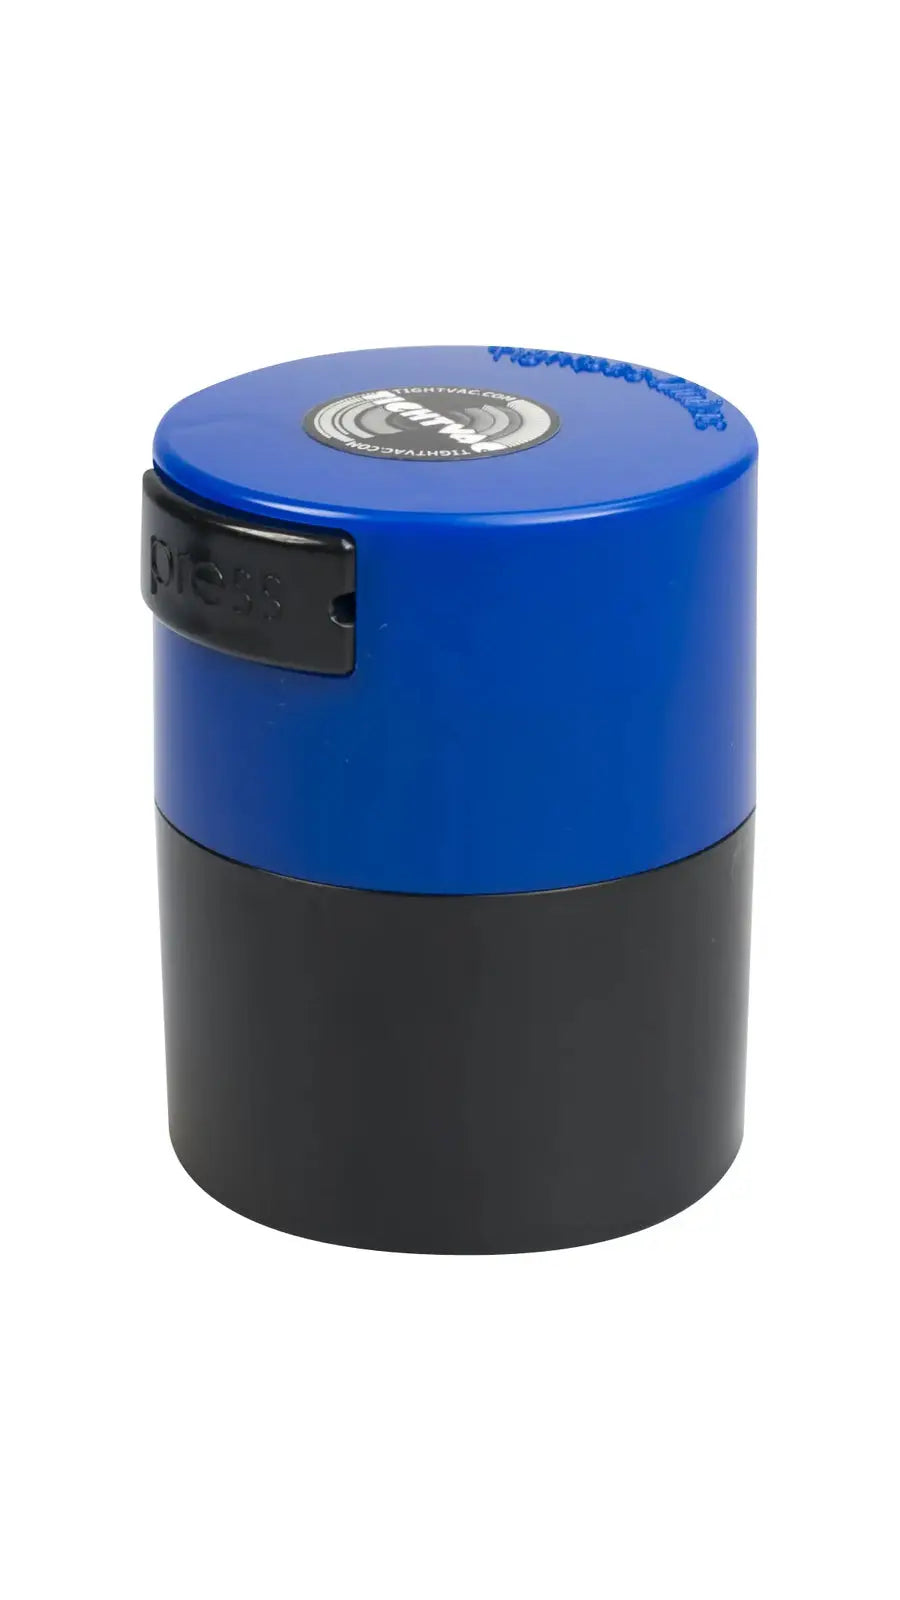 Minivac 0,12 liter / 40g / Solid / Dark Blue TightVac Europe